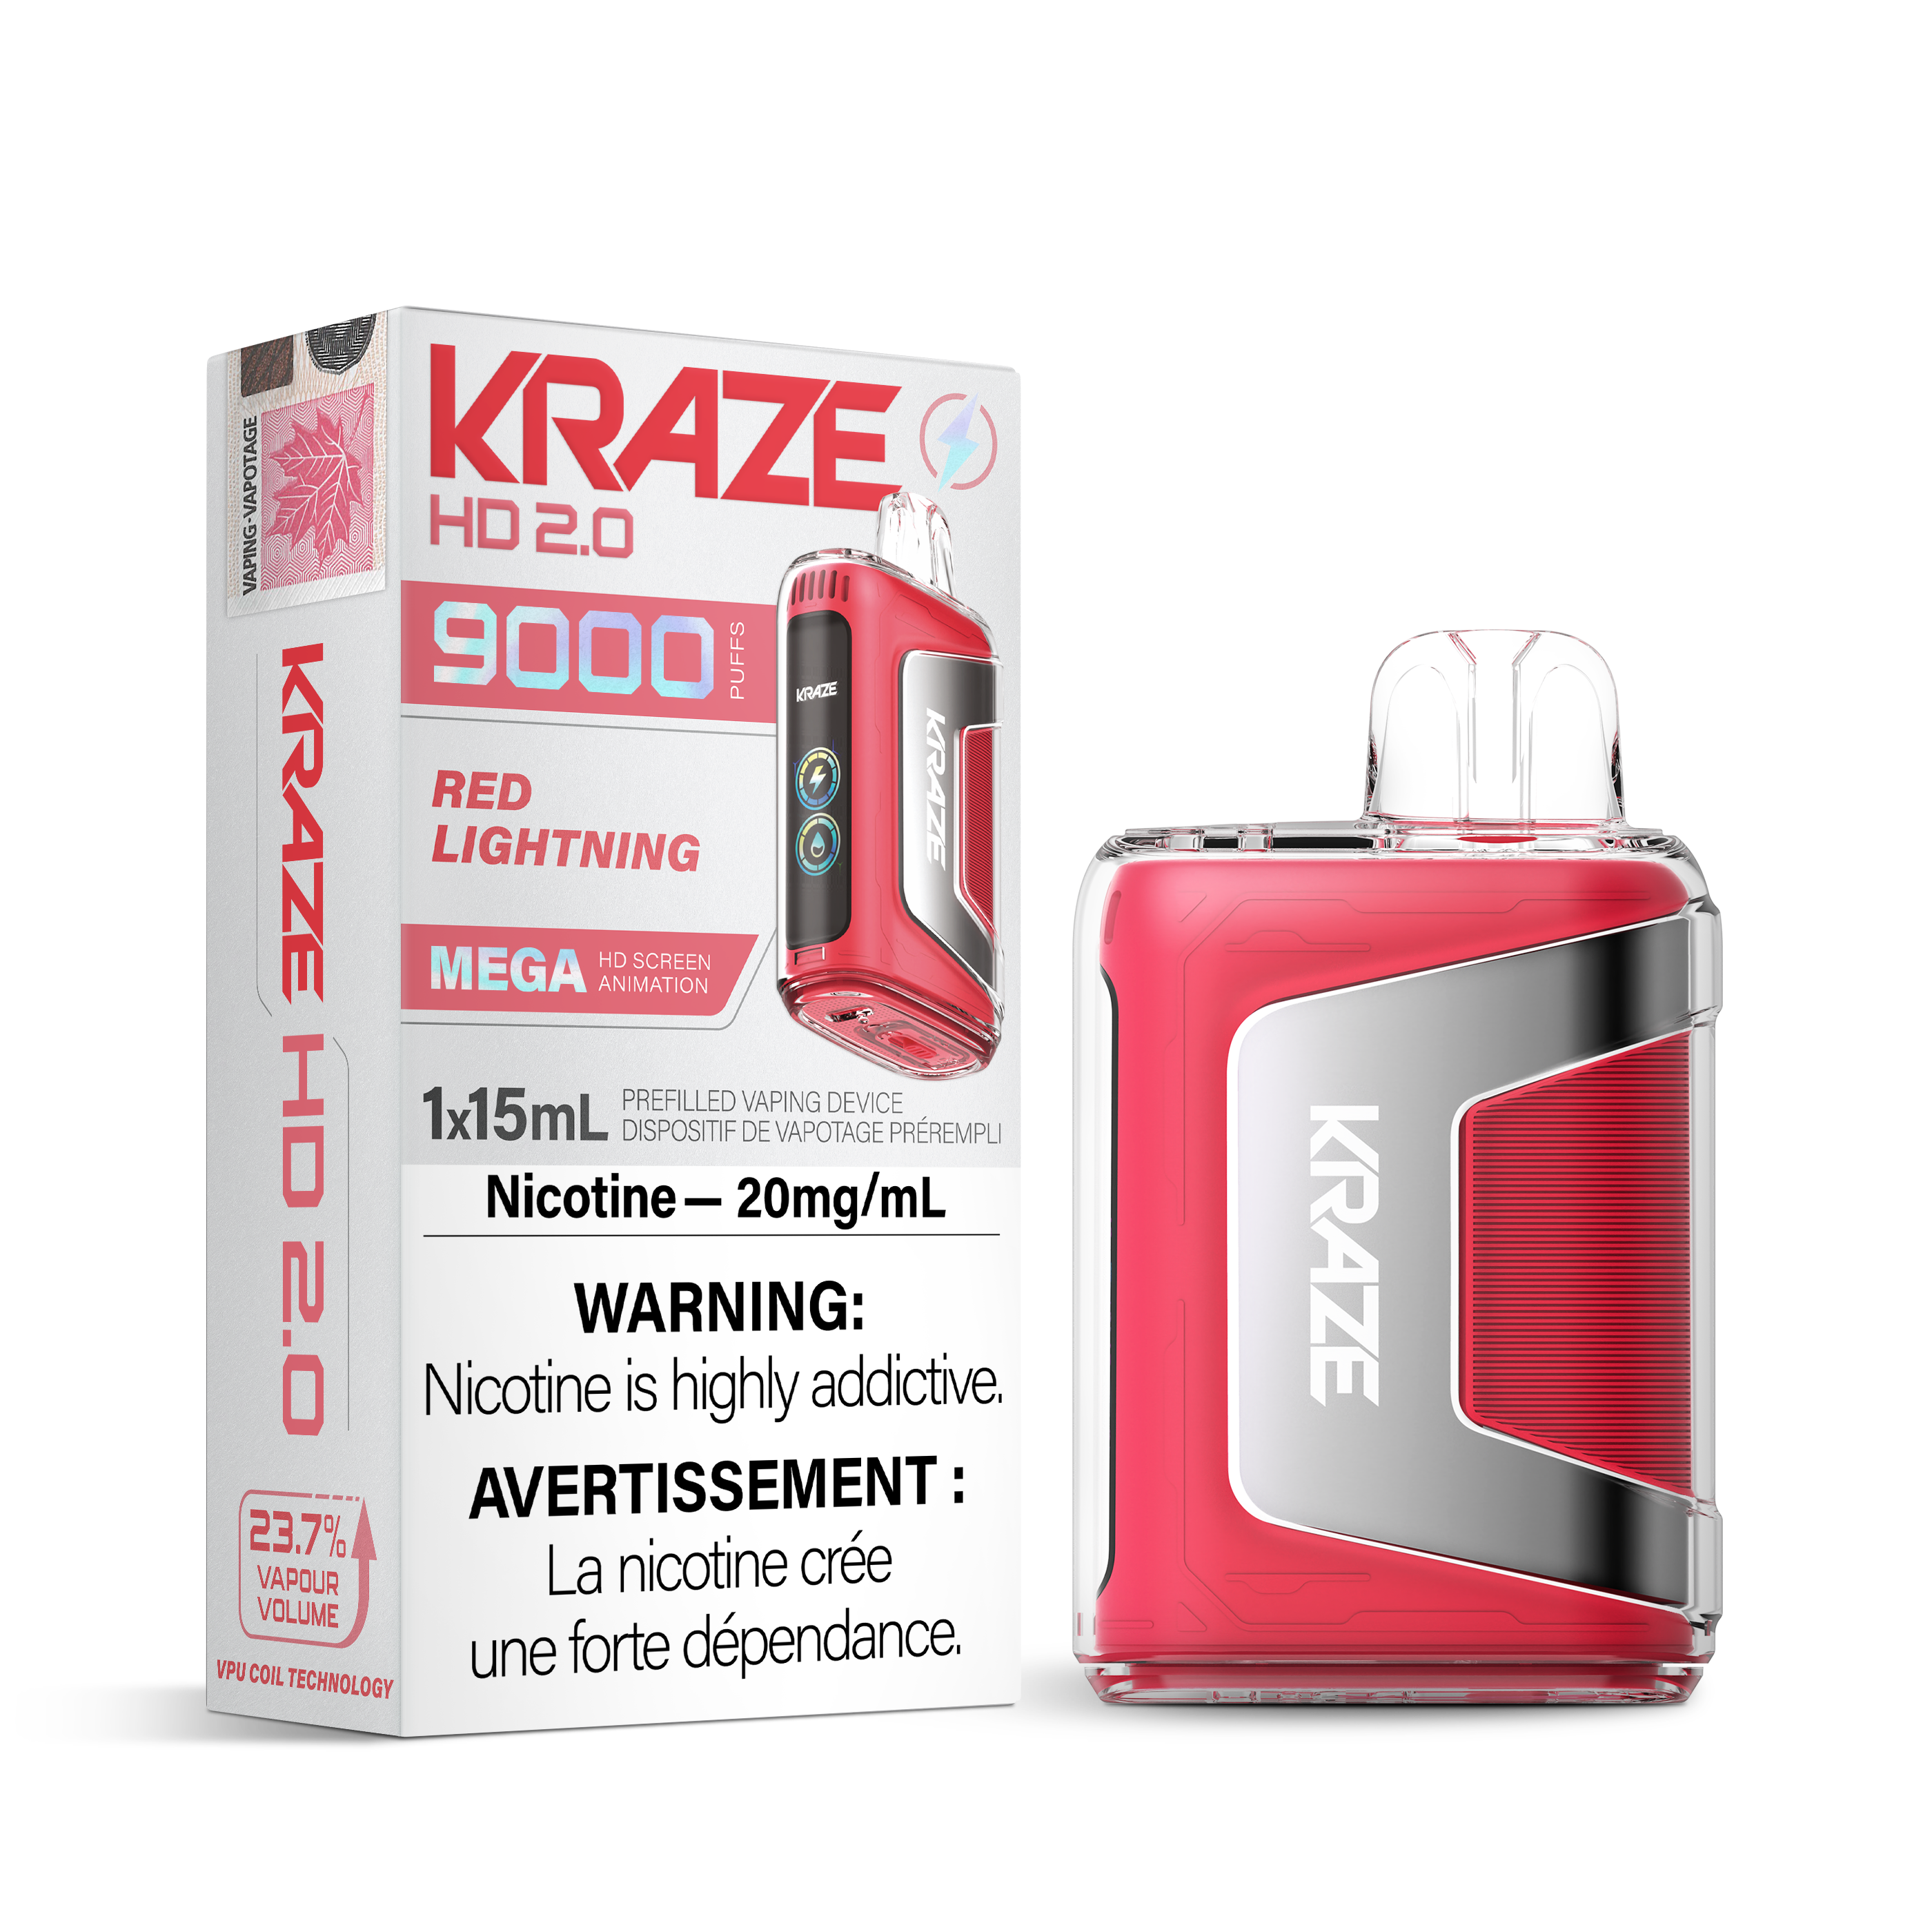 KRAZE HD 2.0 9000 RED LIGHTNING 20MG